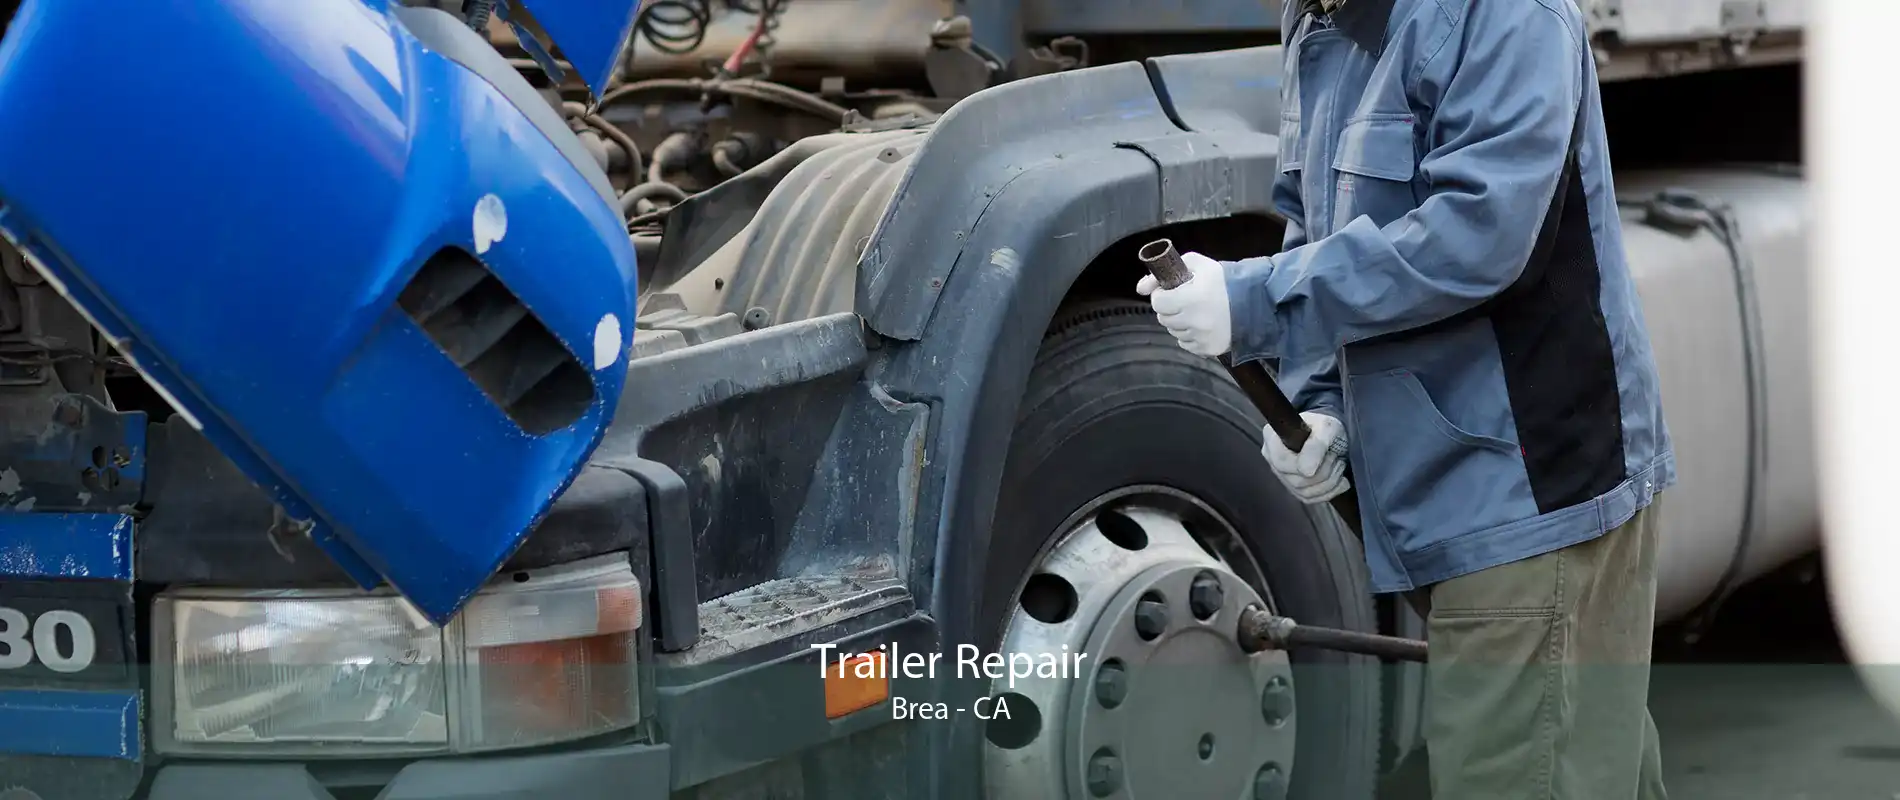 Trailer Repair Brea - CA